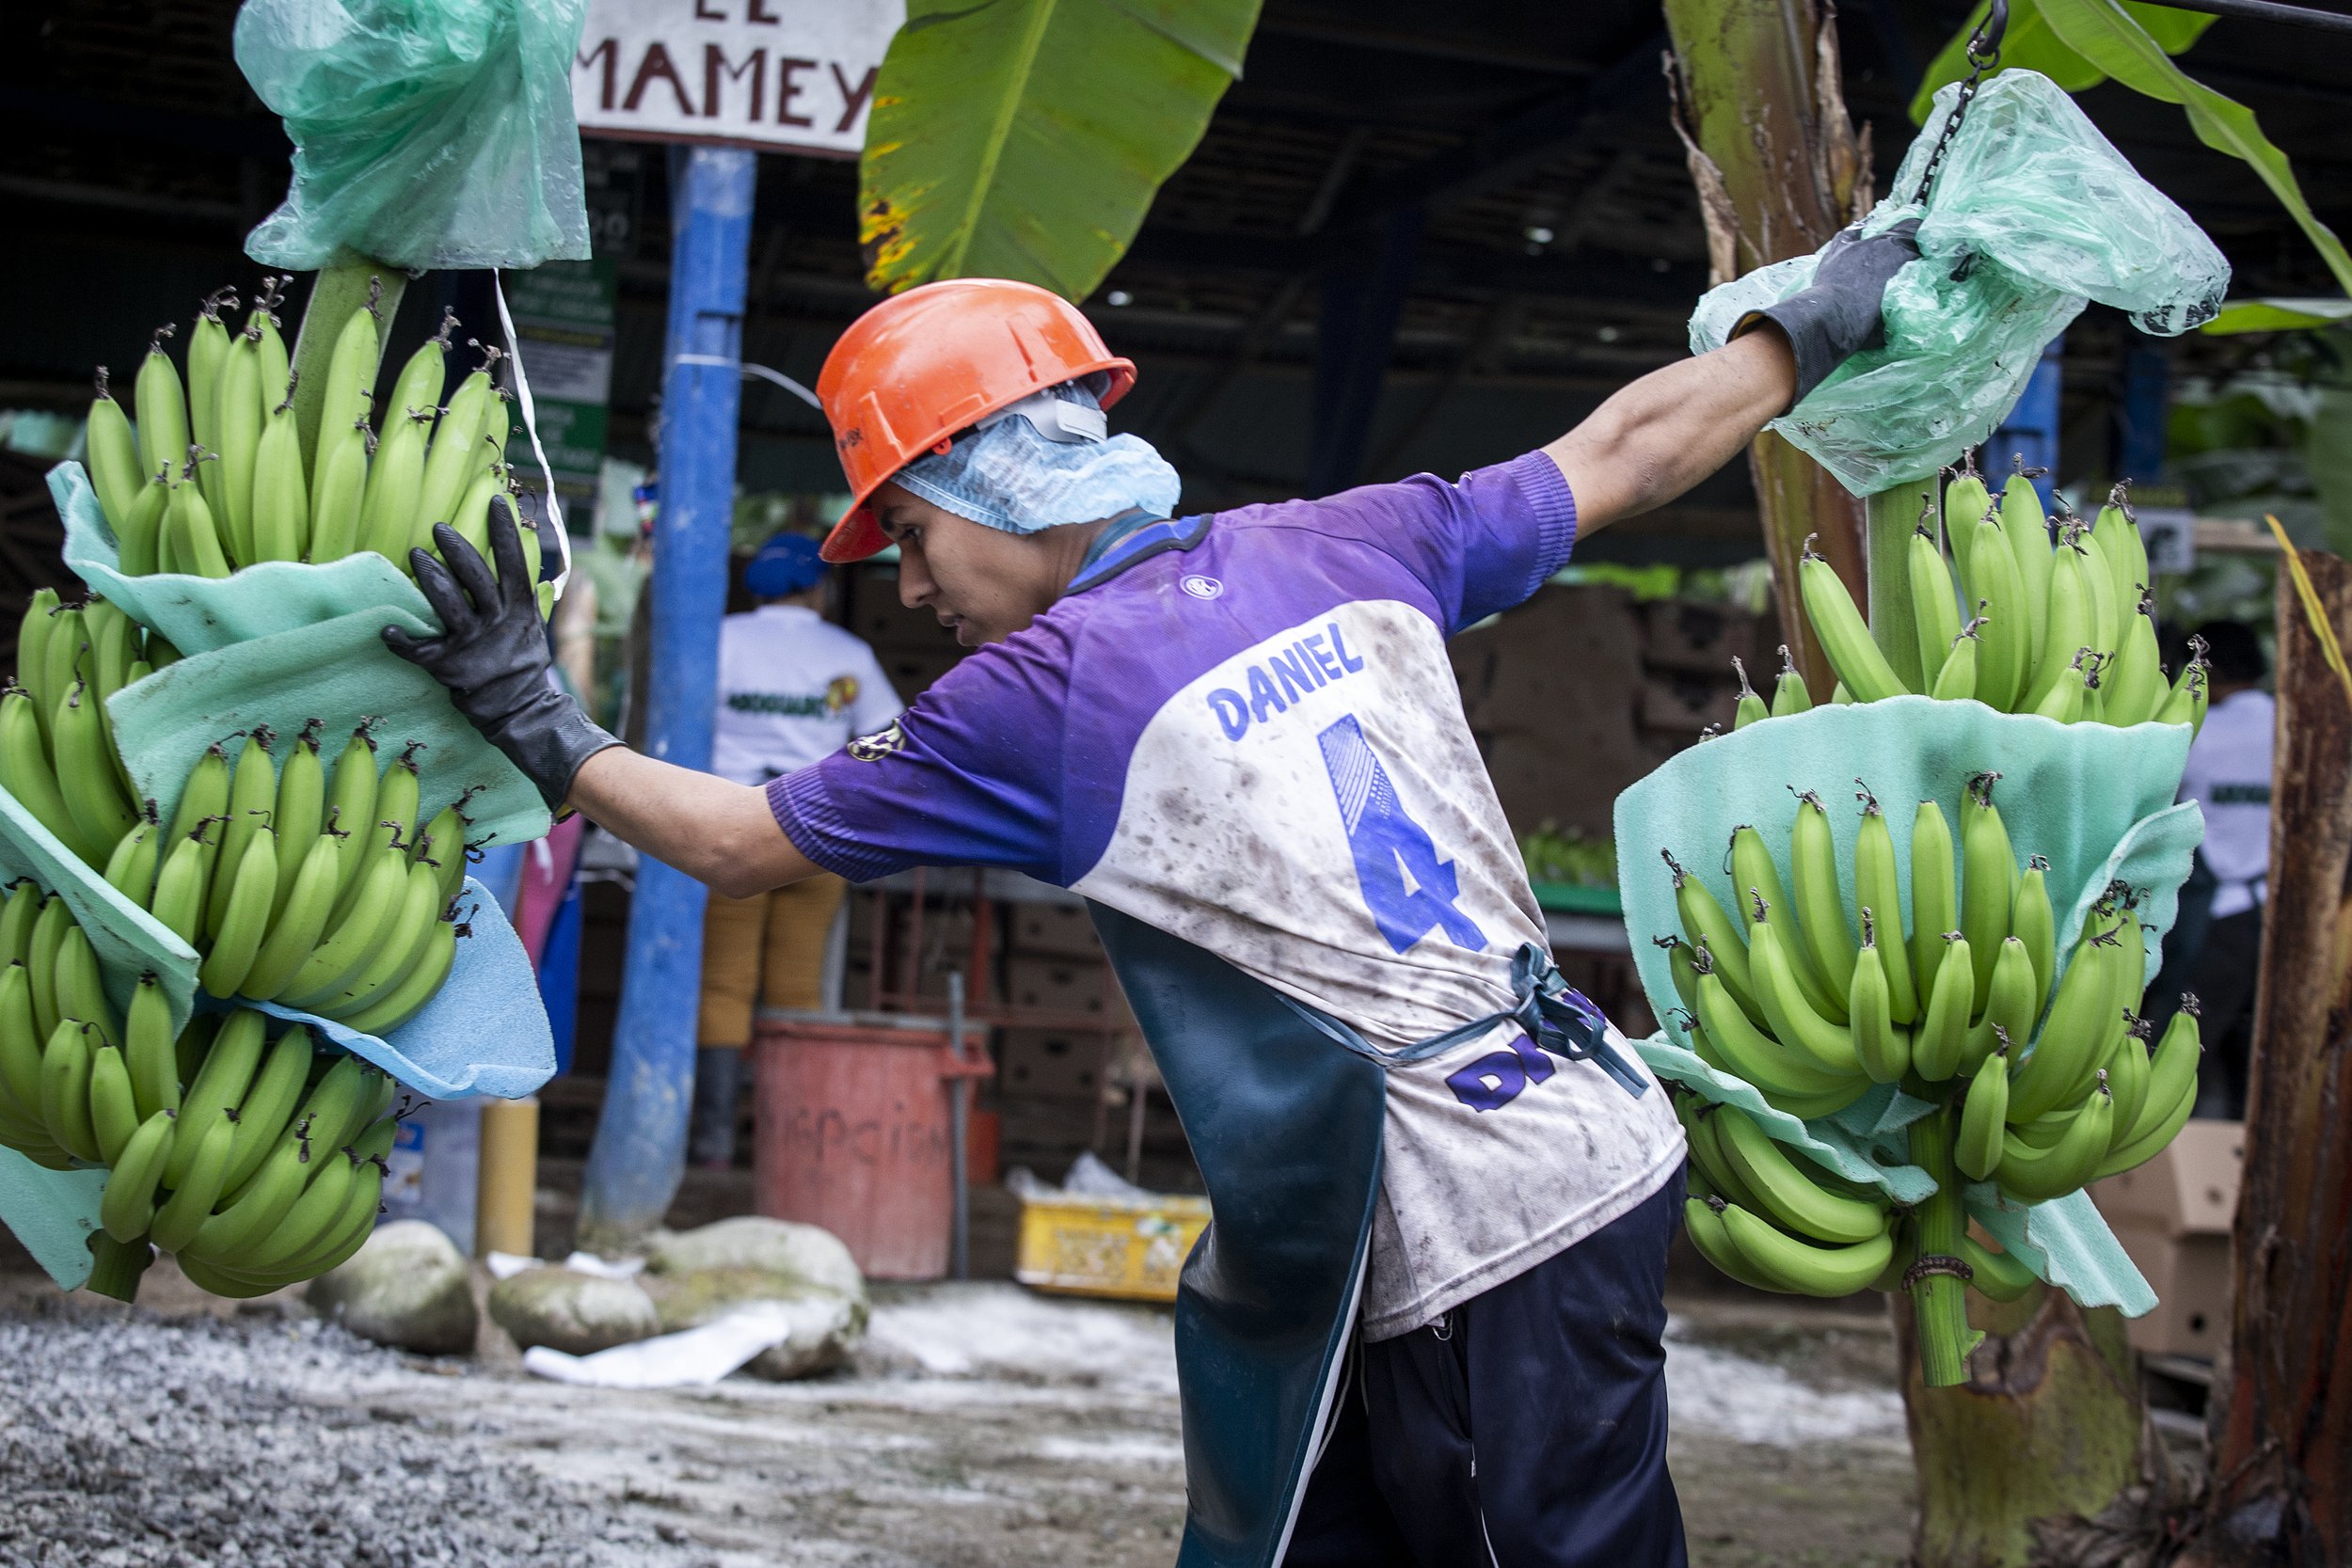 Six Organic & Fair Trade Bananas (Ecuador), 6 count, Equal Exchange